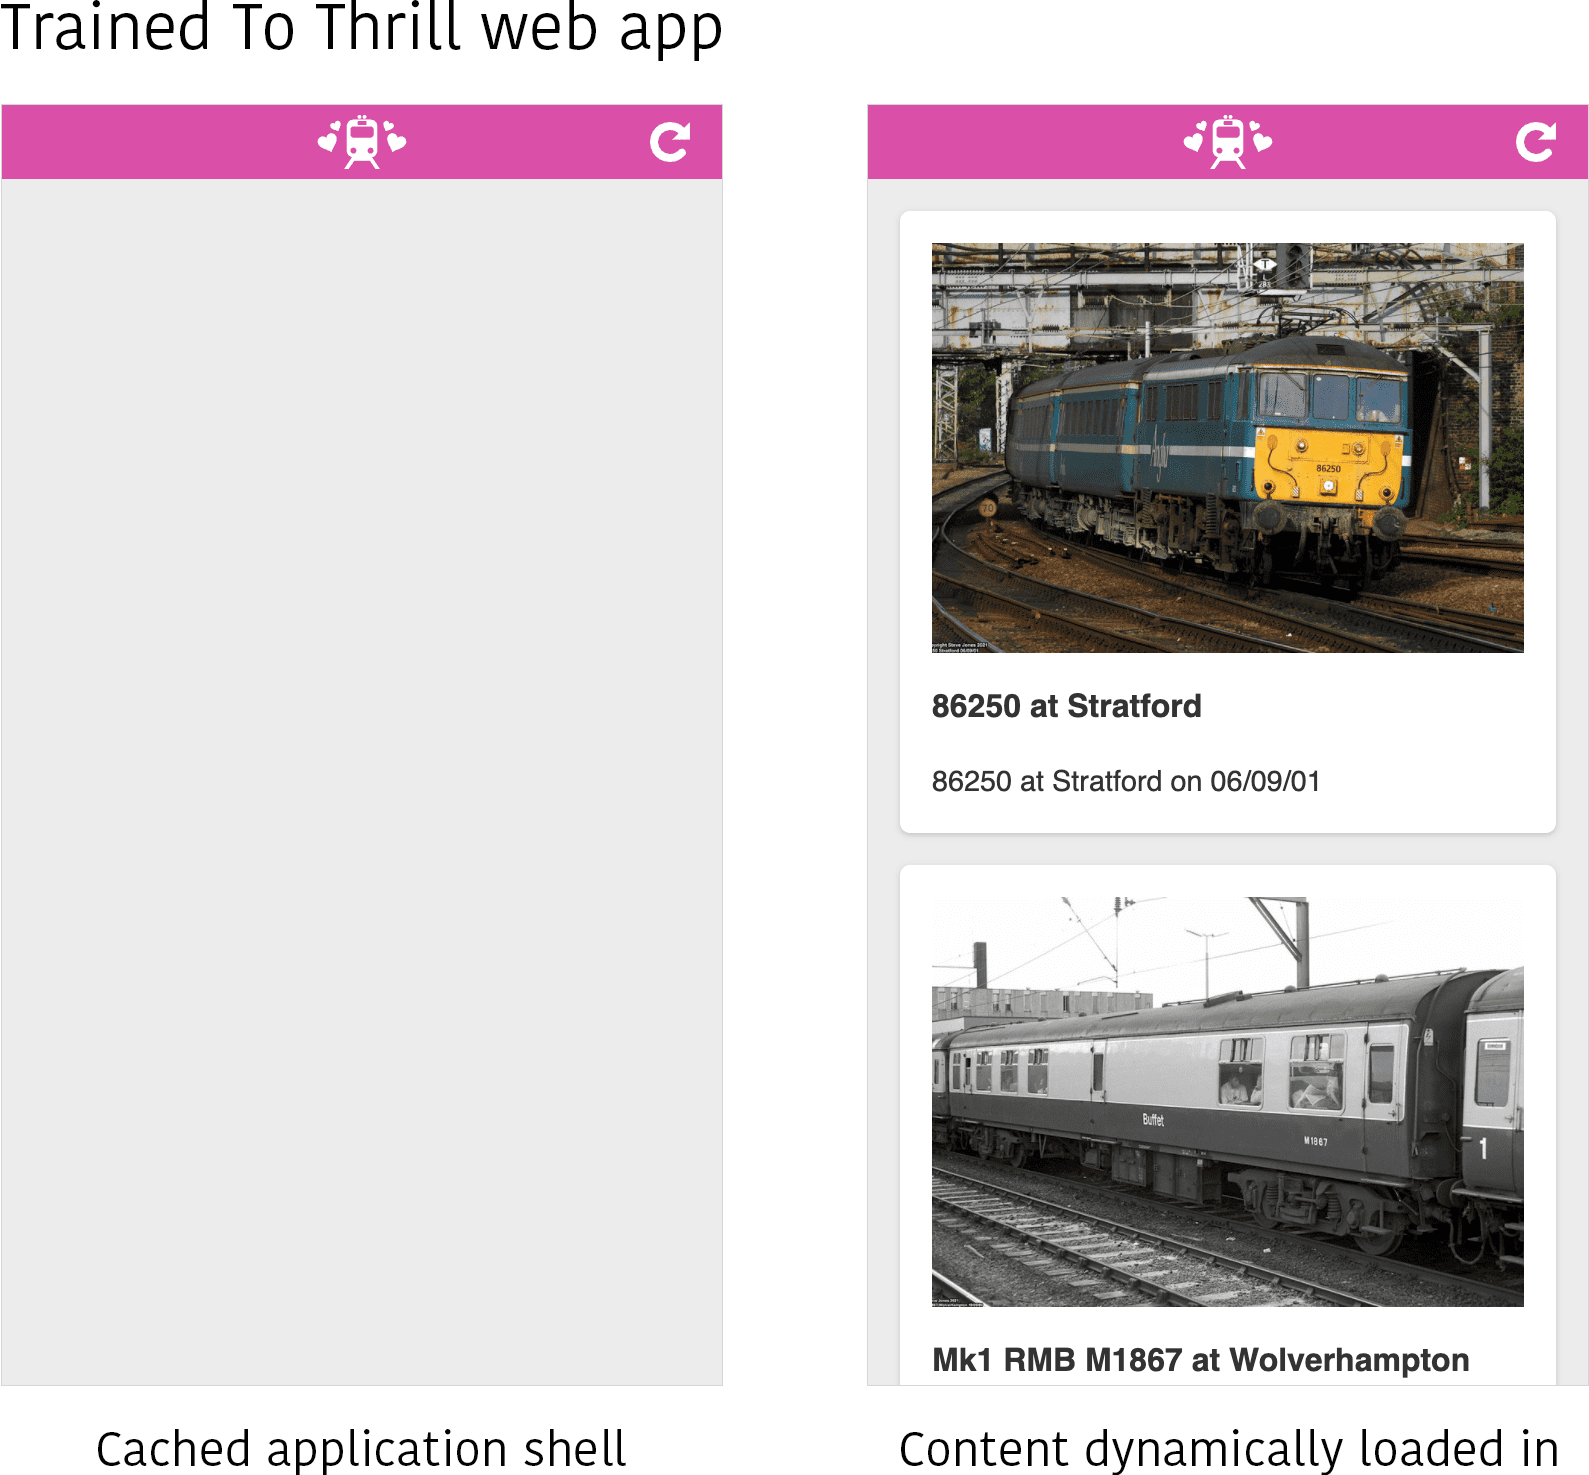 दो अलग-अलग स्थितियों में Trained to Thrill वेब ऐप्लिकेशन का स्क्रीनशॉट. बाईं ओर, सिर्फ़ कैश मेमोरी में सेव किया गया ऐप्लिकेशन शेल दिखता है, जिसमें कोई भी कॉन्टेंट अपने-आप नहीं भरता. दाईं ओर, कॉन्टेंट (कुछ ट्रेनों की कुछ तस्वीरें) को ऐप्लिकेशन शेल के कॉन्टेंट एरिया में डाइनैमिक तरीके से लोड किया जाता है.